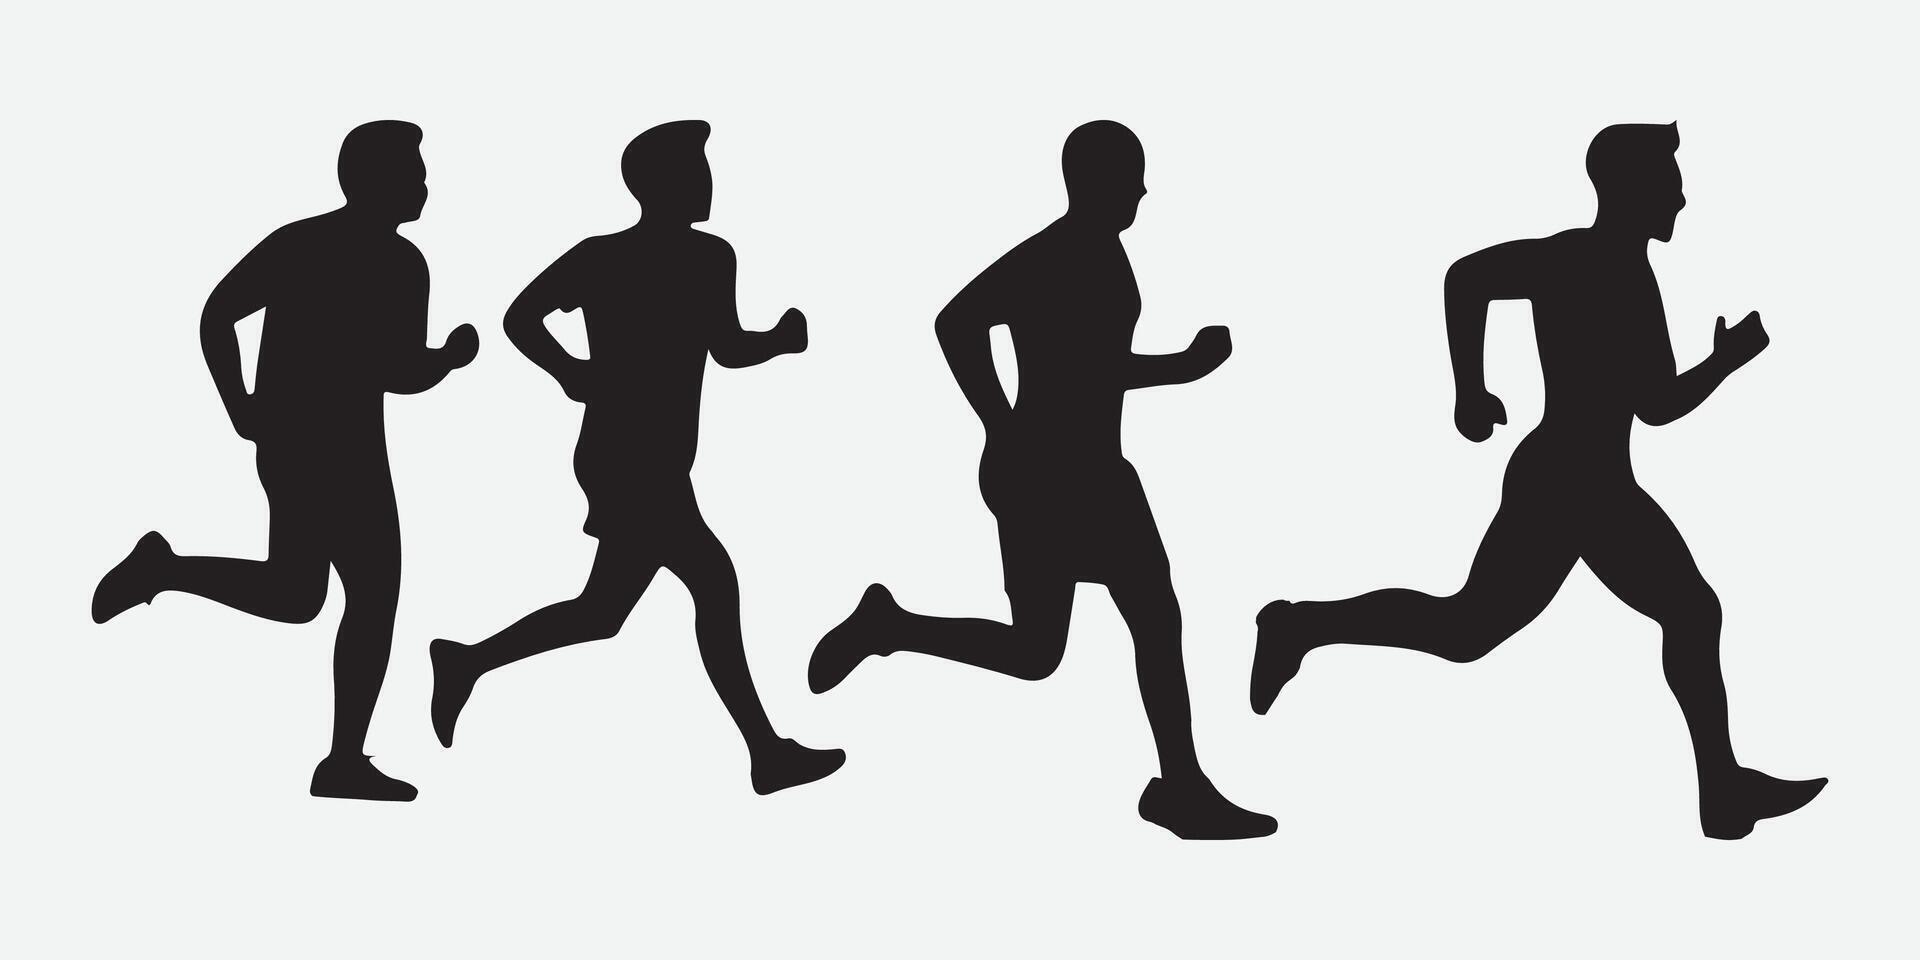 Laufen oder Joggen männlich Silhouetten isoliert auf Weiß Hintergrund Vektor Illustration